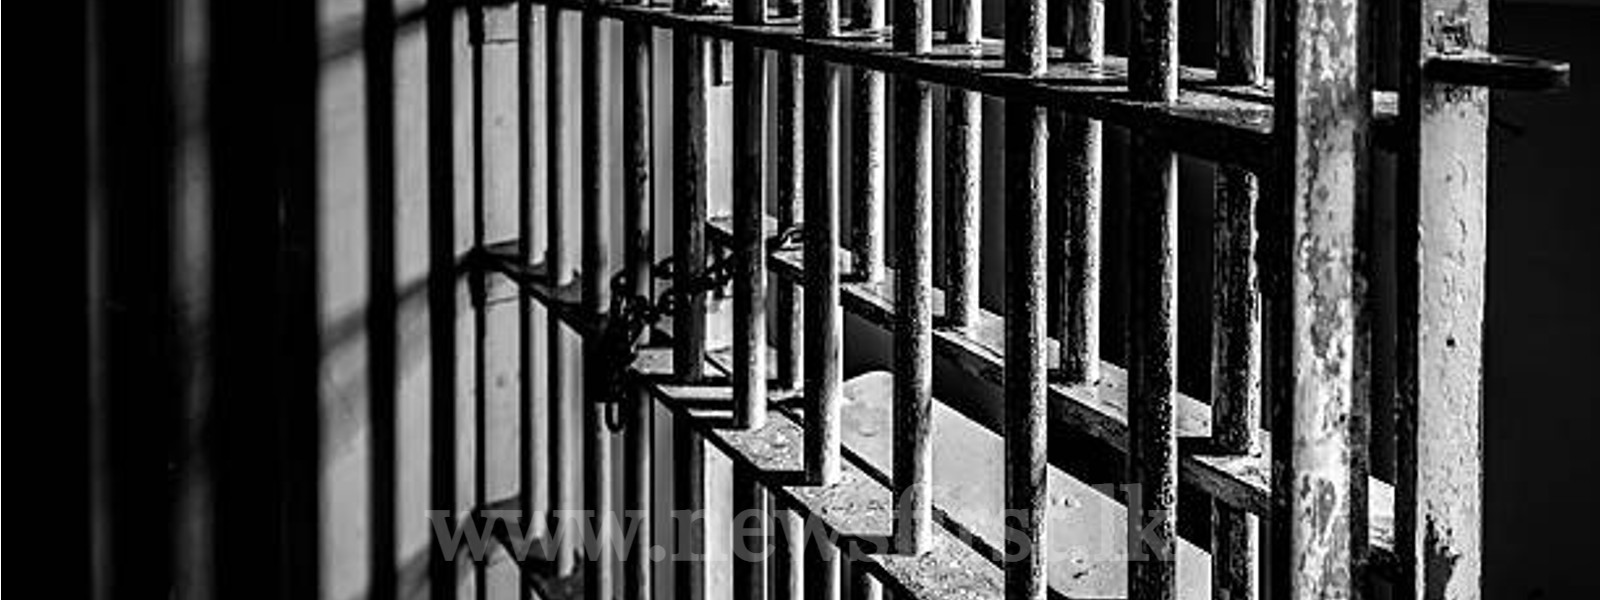 ‘Sathi Pasala’ to be established at Welikada prison to rehabilitate inmates